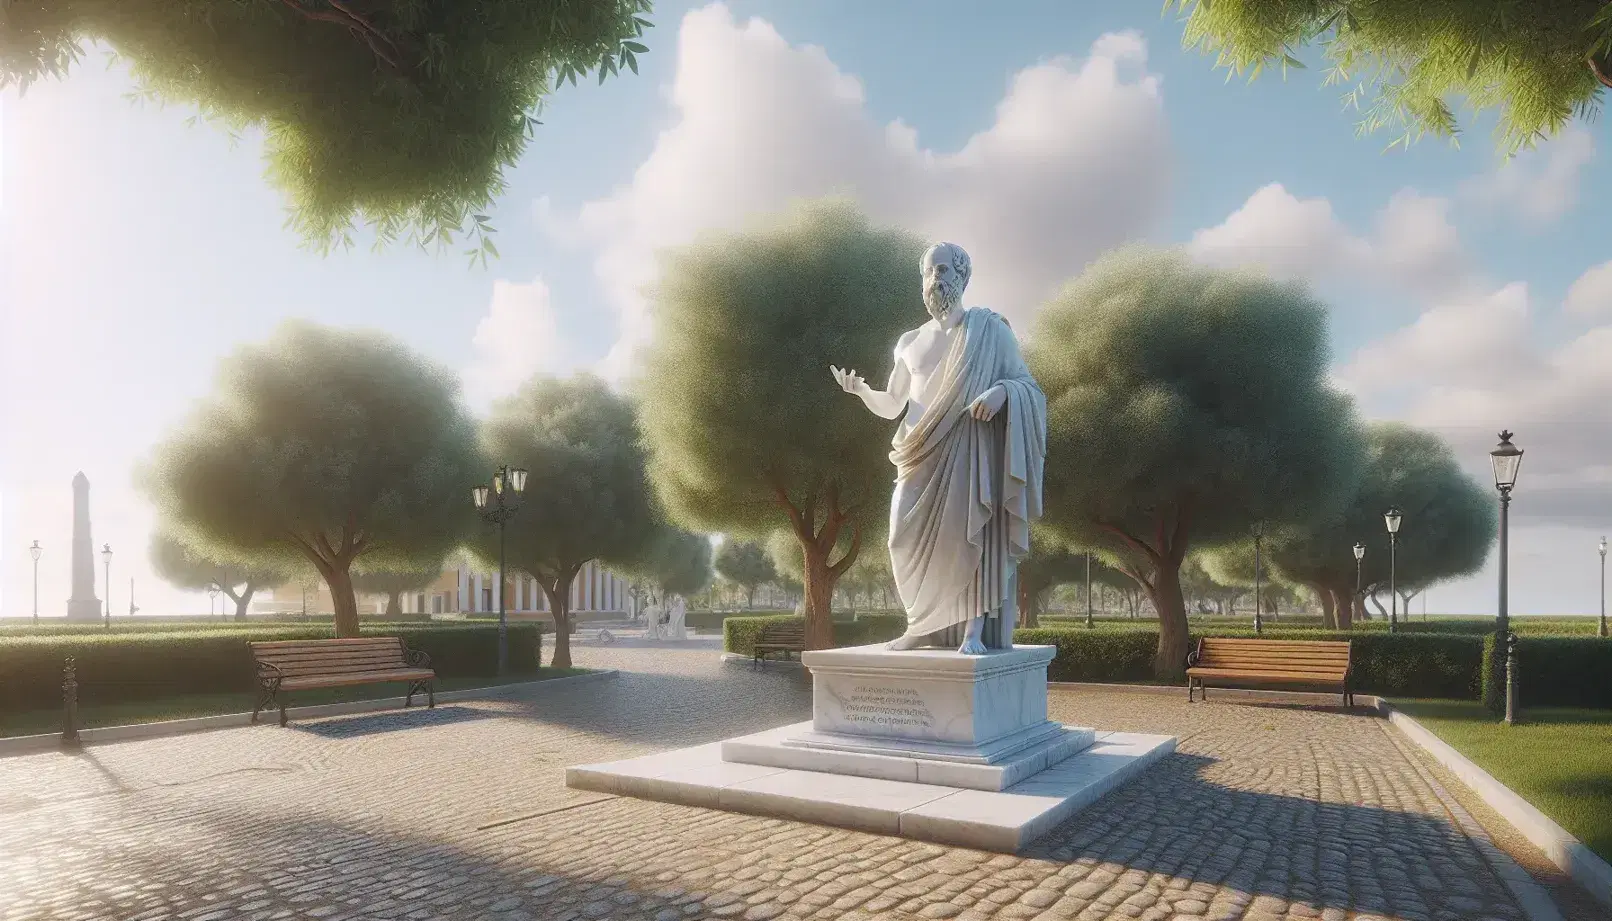 Estatua de mármol blanco de filósofo griego clásico en parque, con túnica y mano extendida, rodeada de árboles verdes y bancos de madera bajo cielo azul con nubes.